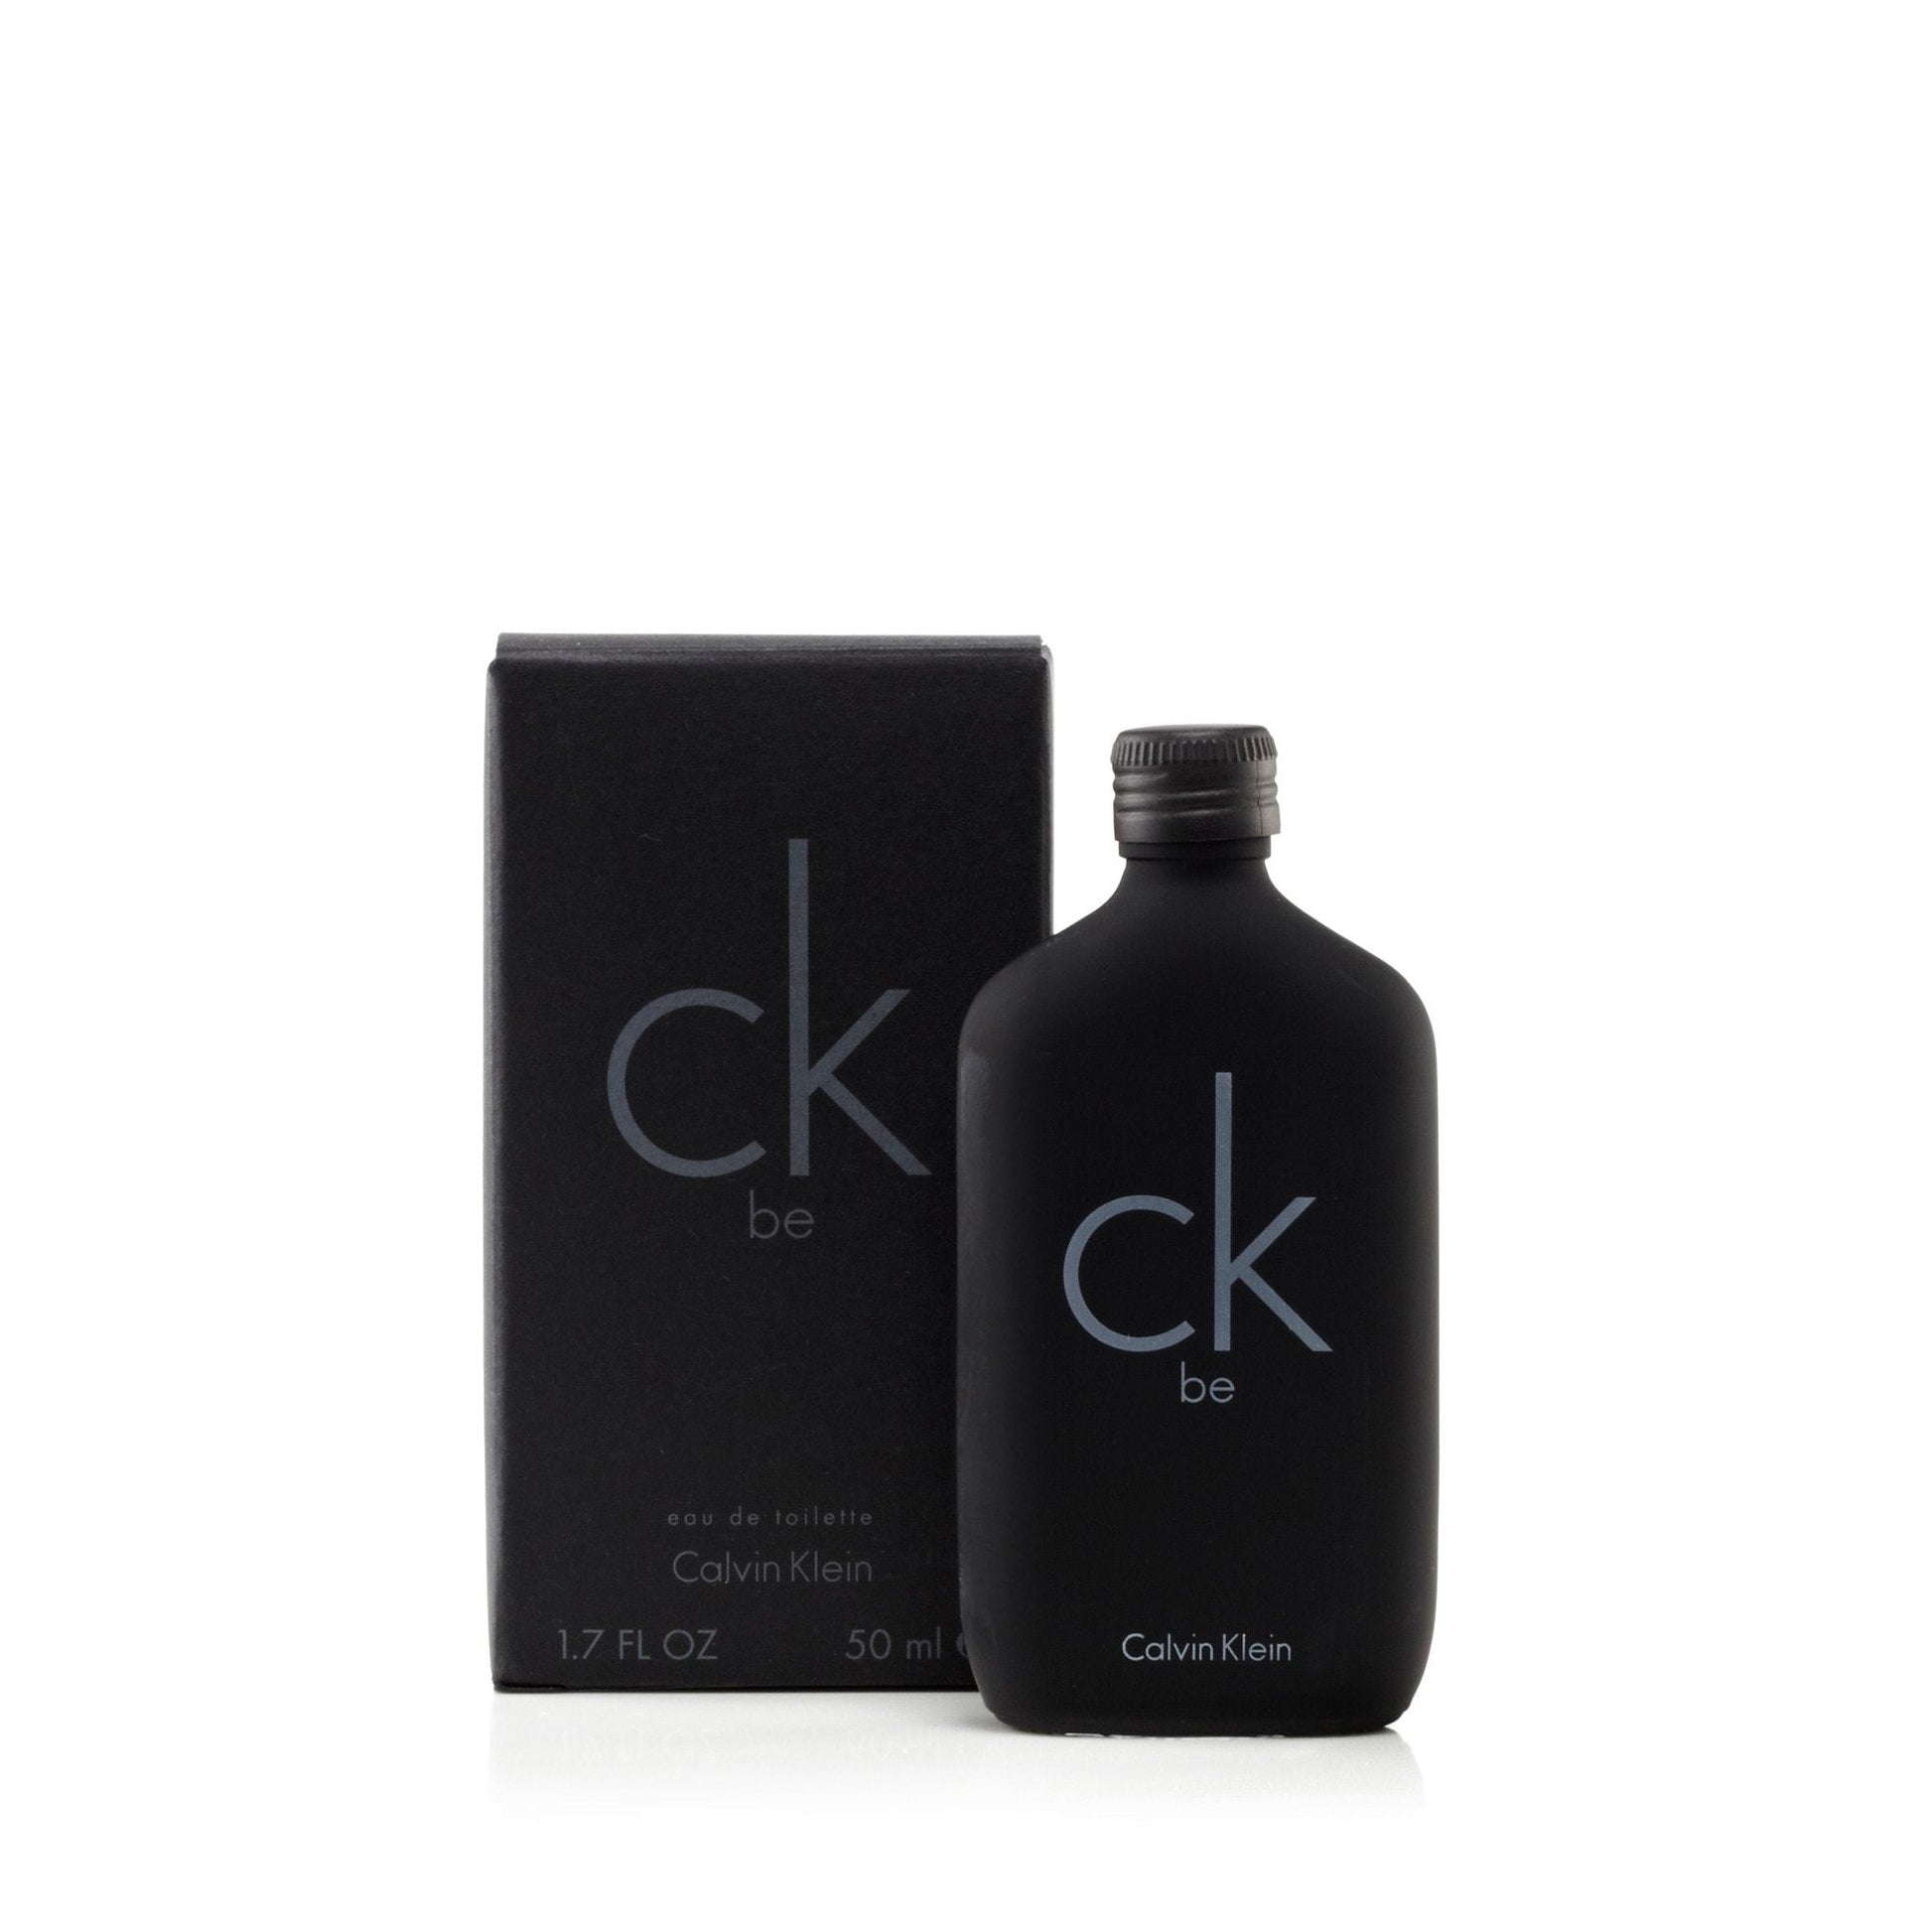 Be Eau de Toilette Spray for Men by Calvin Klein, Product image 6